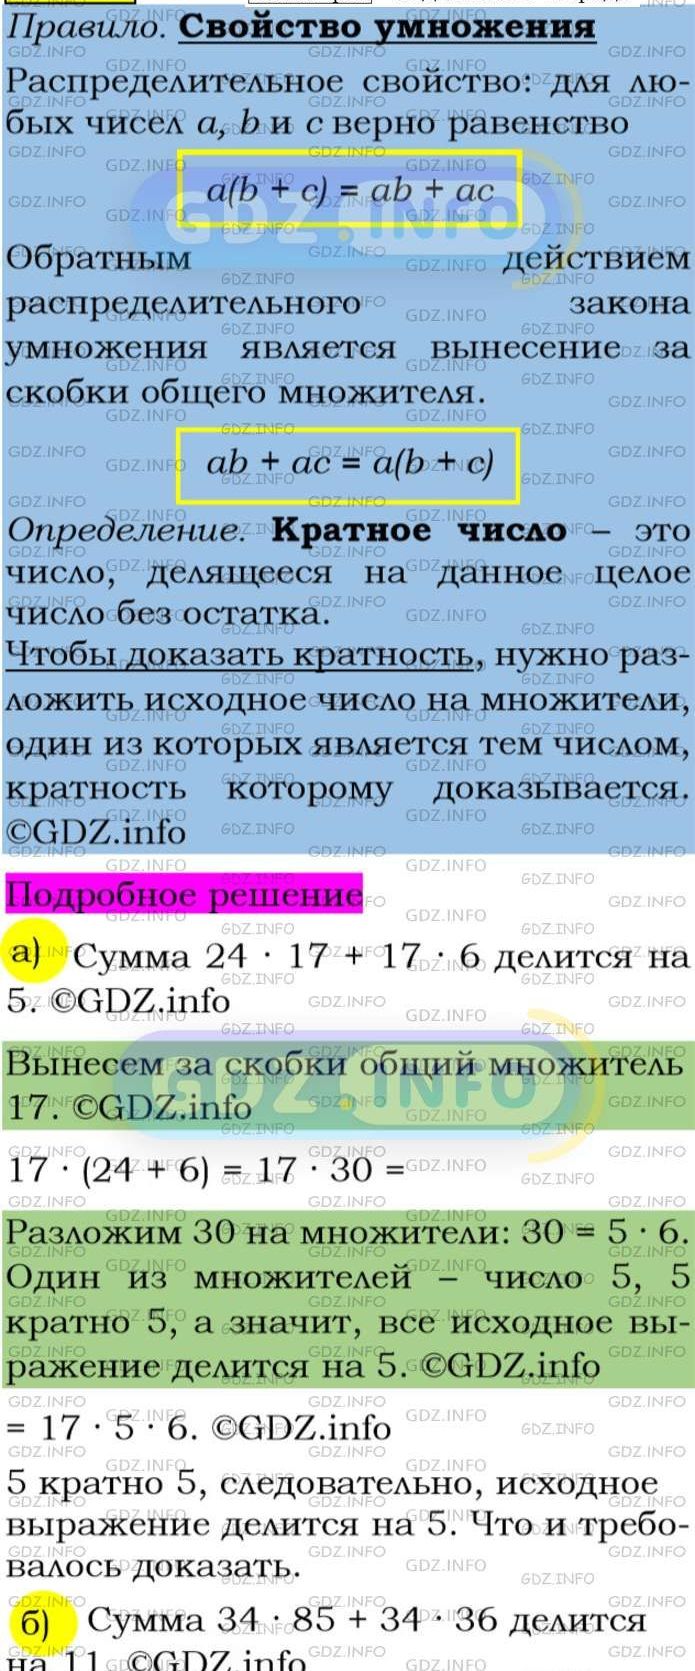 Фото подробного решения: Номер задания №98 из ГДЗ по Алгебре 7 класс: Макарычев Ю.Н.